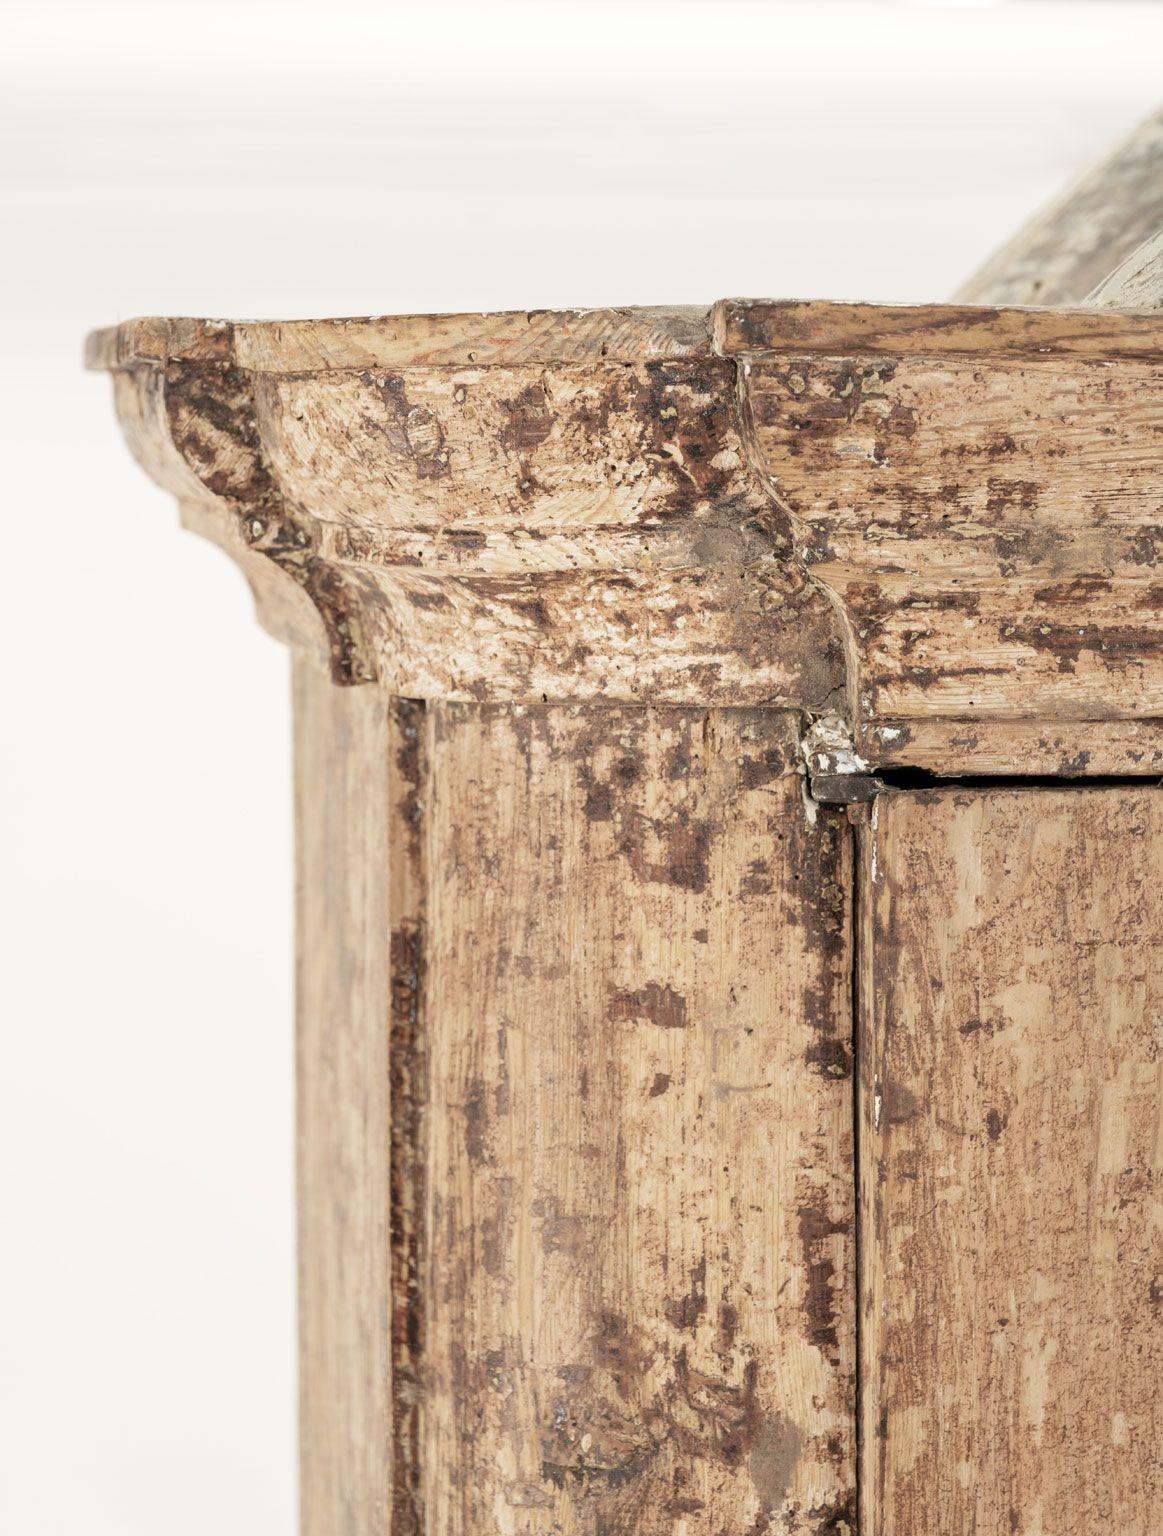 Armoire suédoise rococo vers 1770-1780. La peinture d'origine a été grattée. Robuste, stable. Comprend la clé et les serrures en état de marche. Intérieur peint en bleu tendre. La forme et les lignes simples et classiques de cette armoire lui